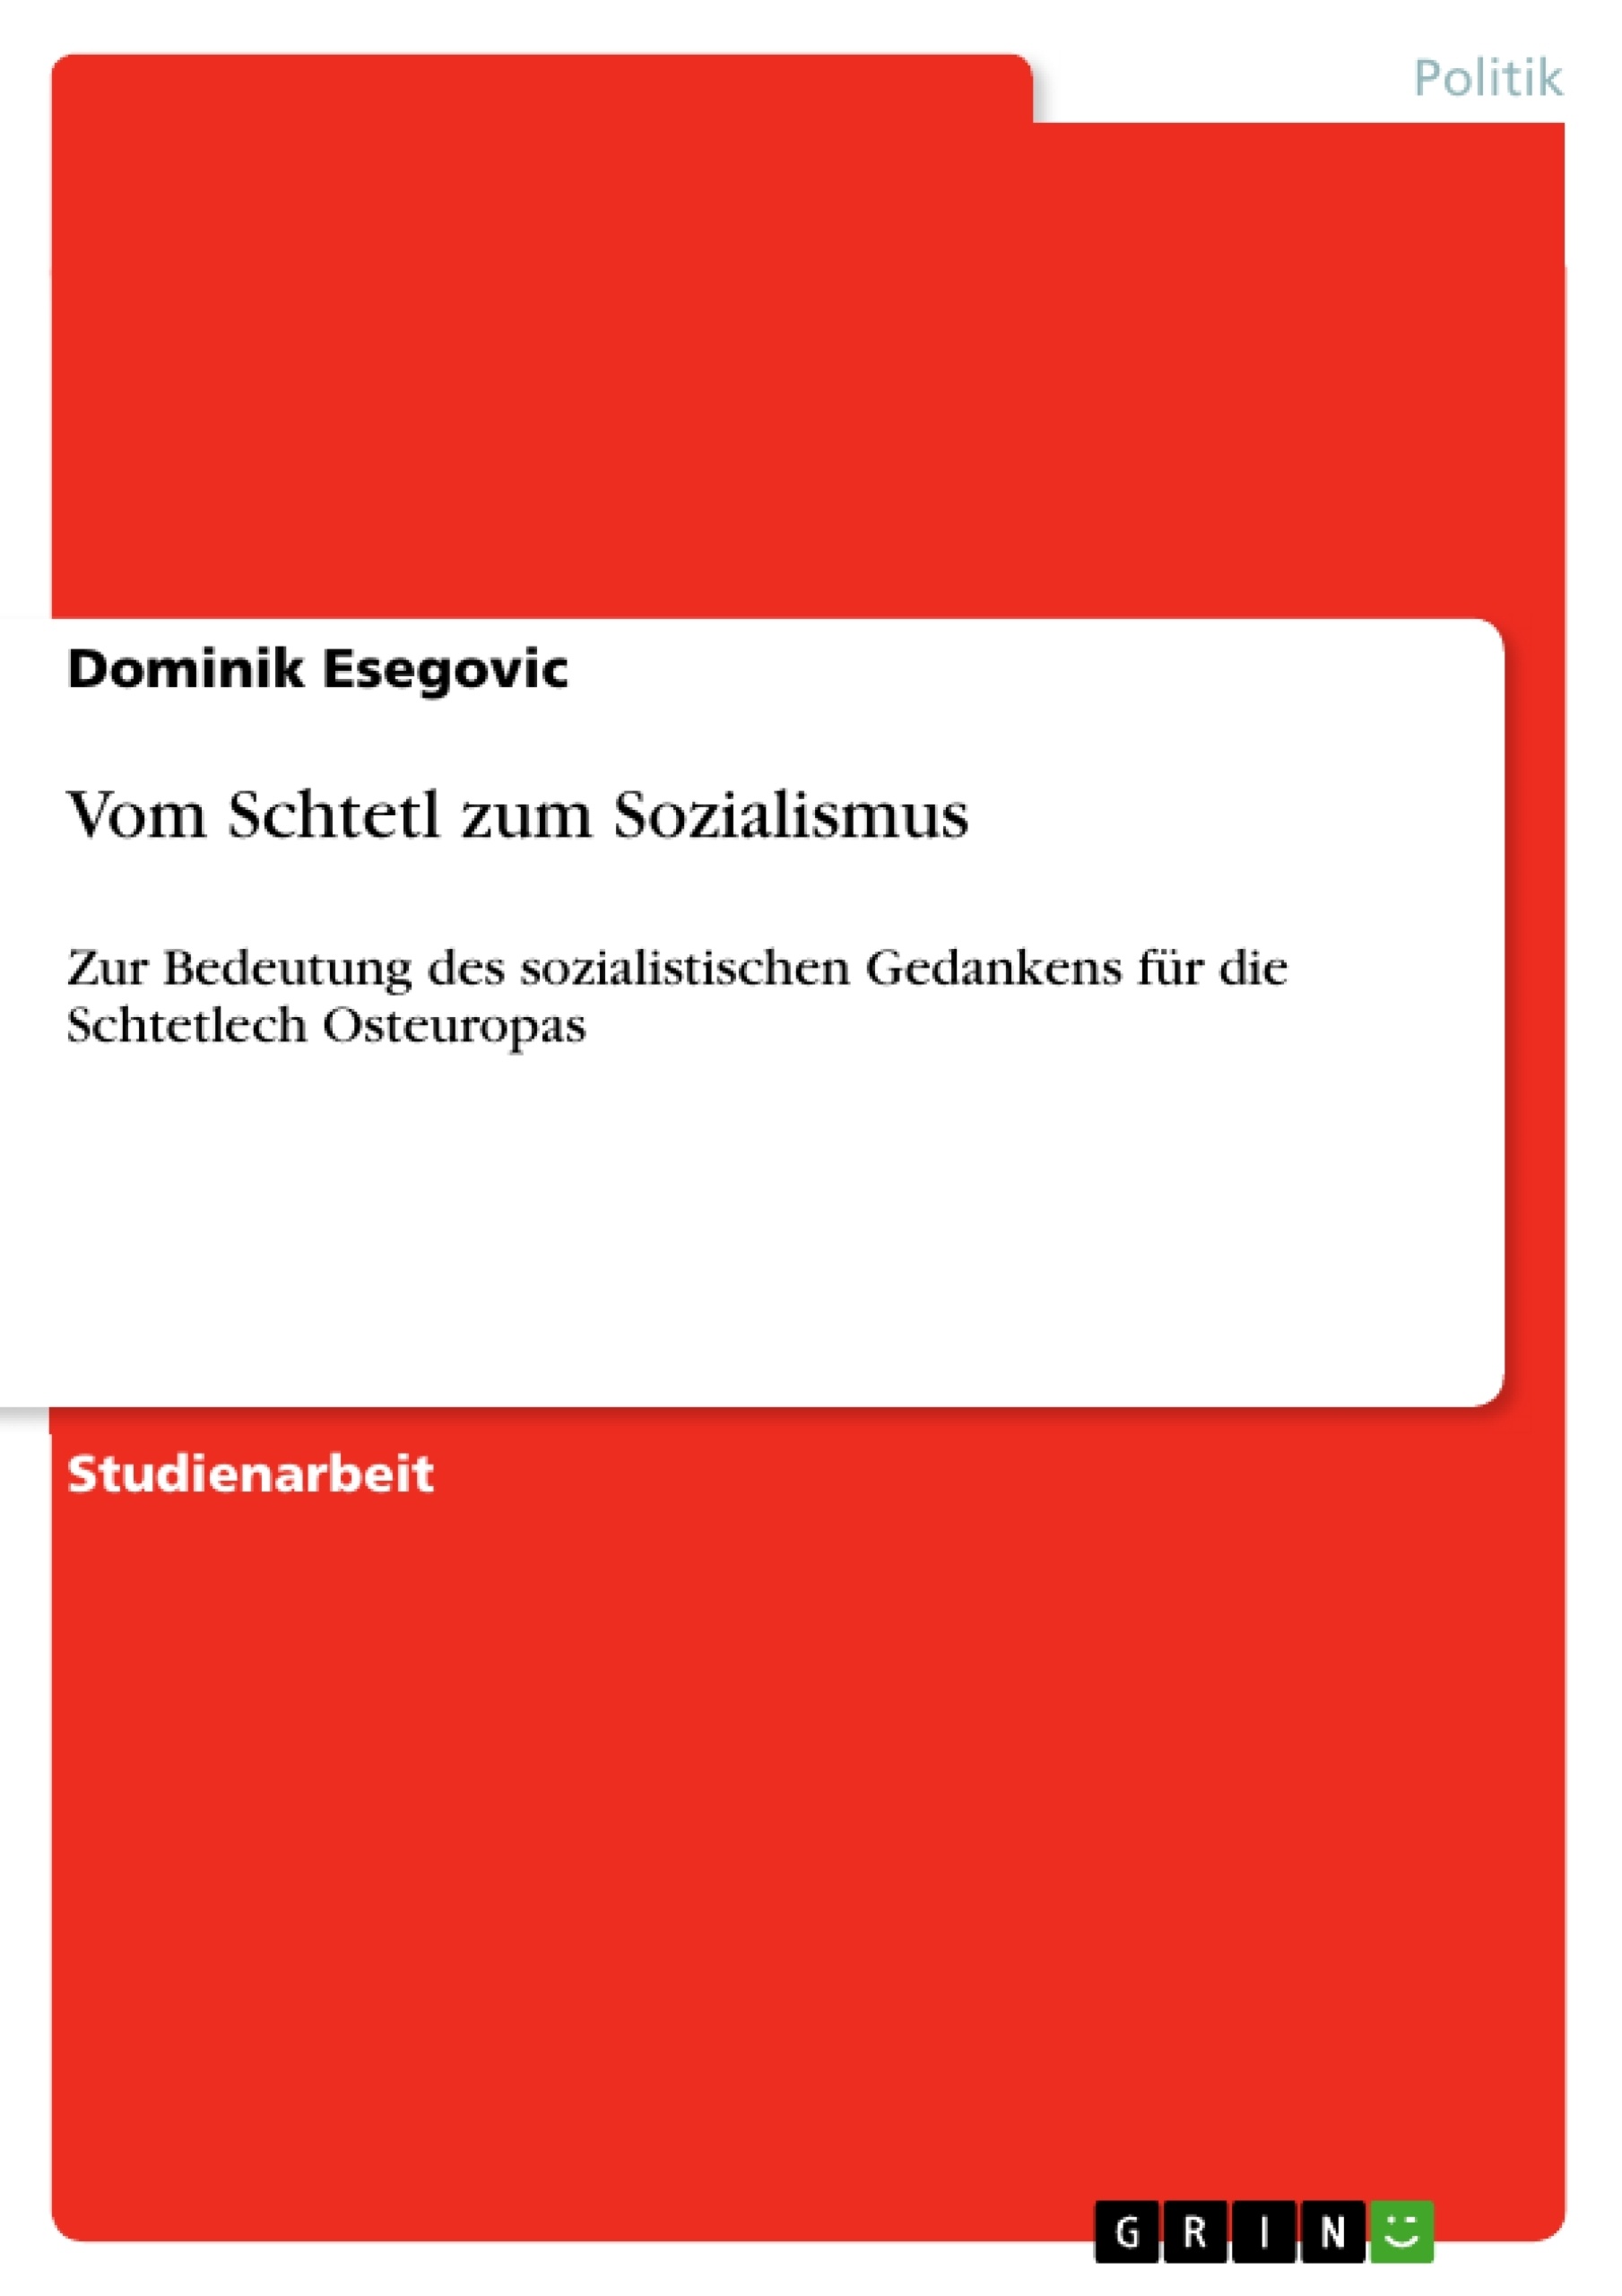 Titre: Vom Schtetl zum Sozialismus